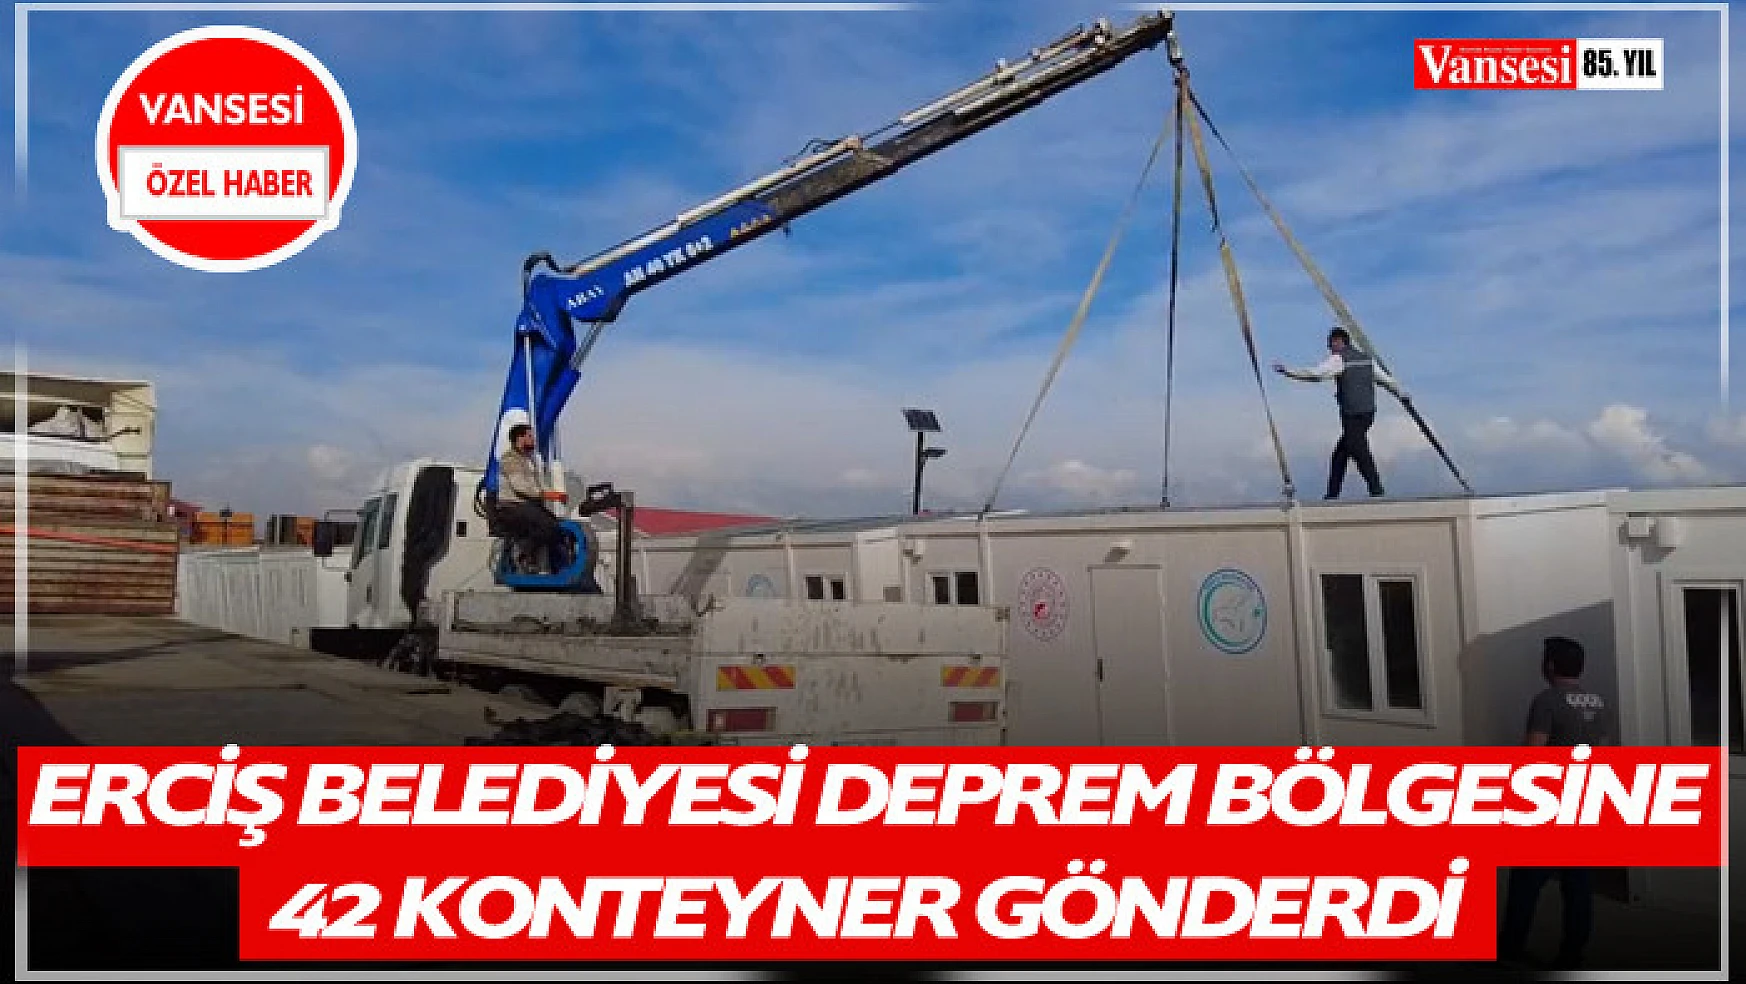 Erciş Belediyesi deprem bölgesine 42 konteyner gönderdi